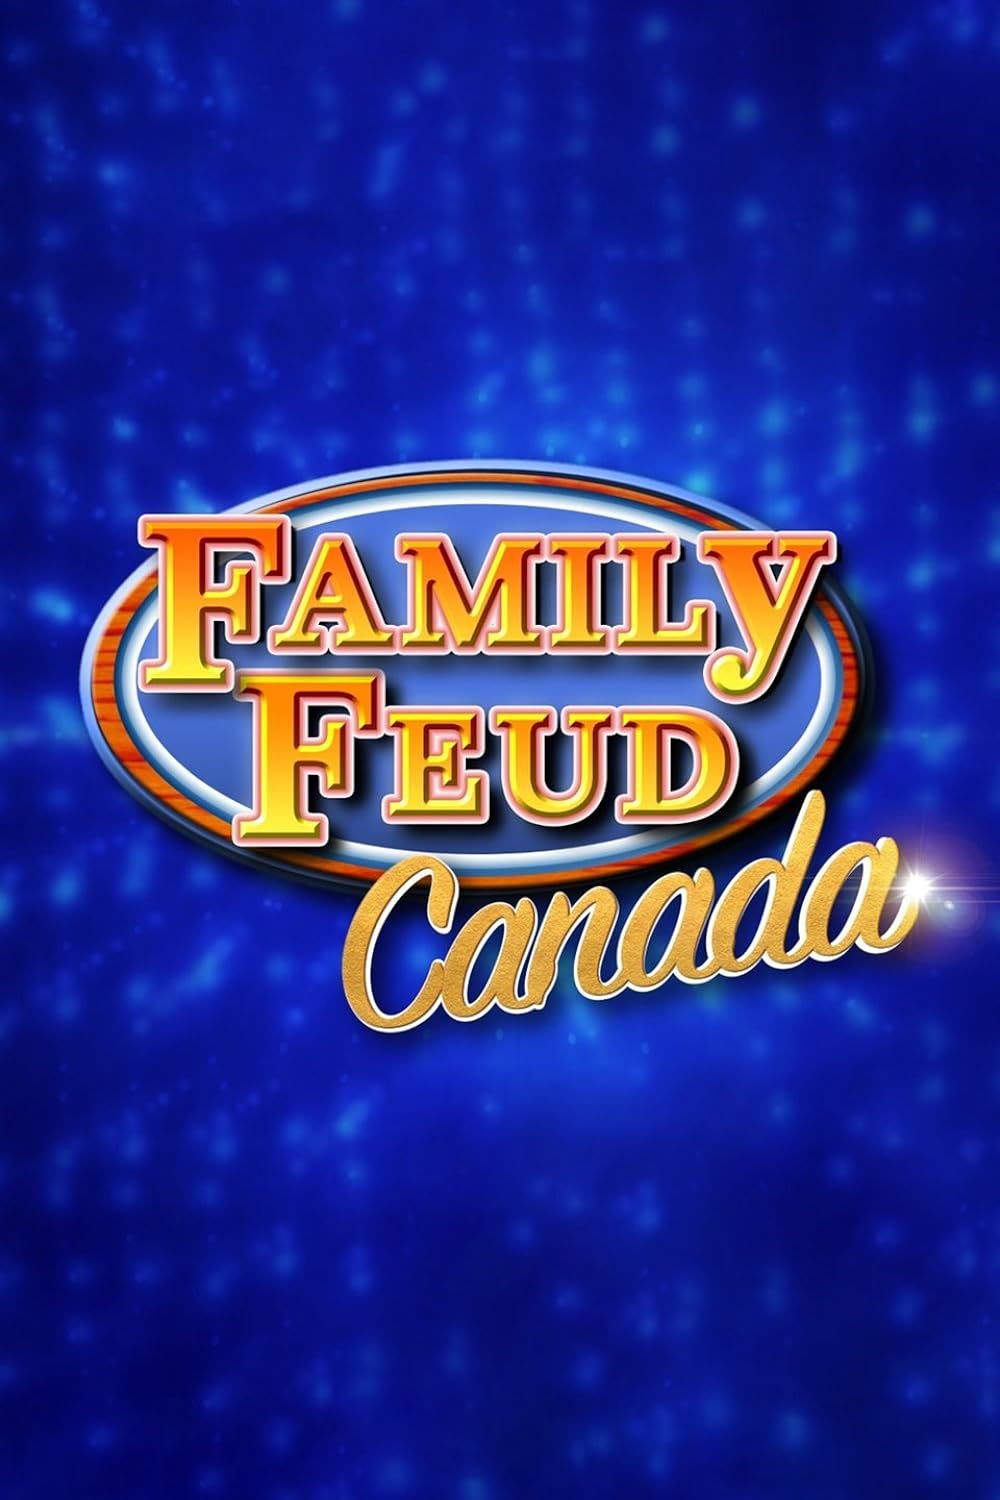 Family Feud Canada